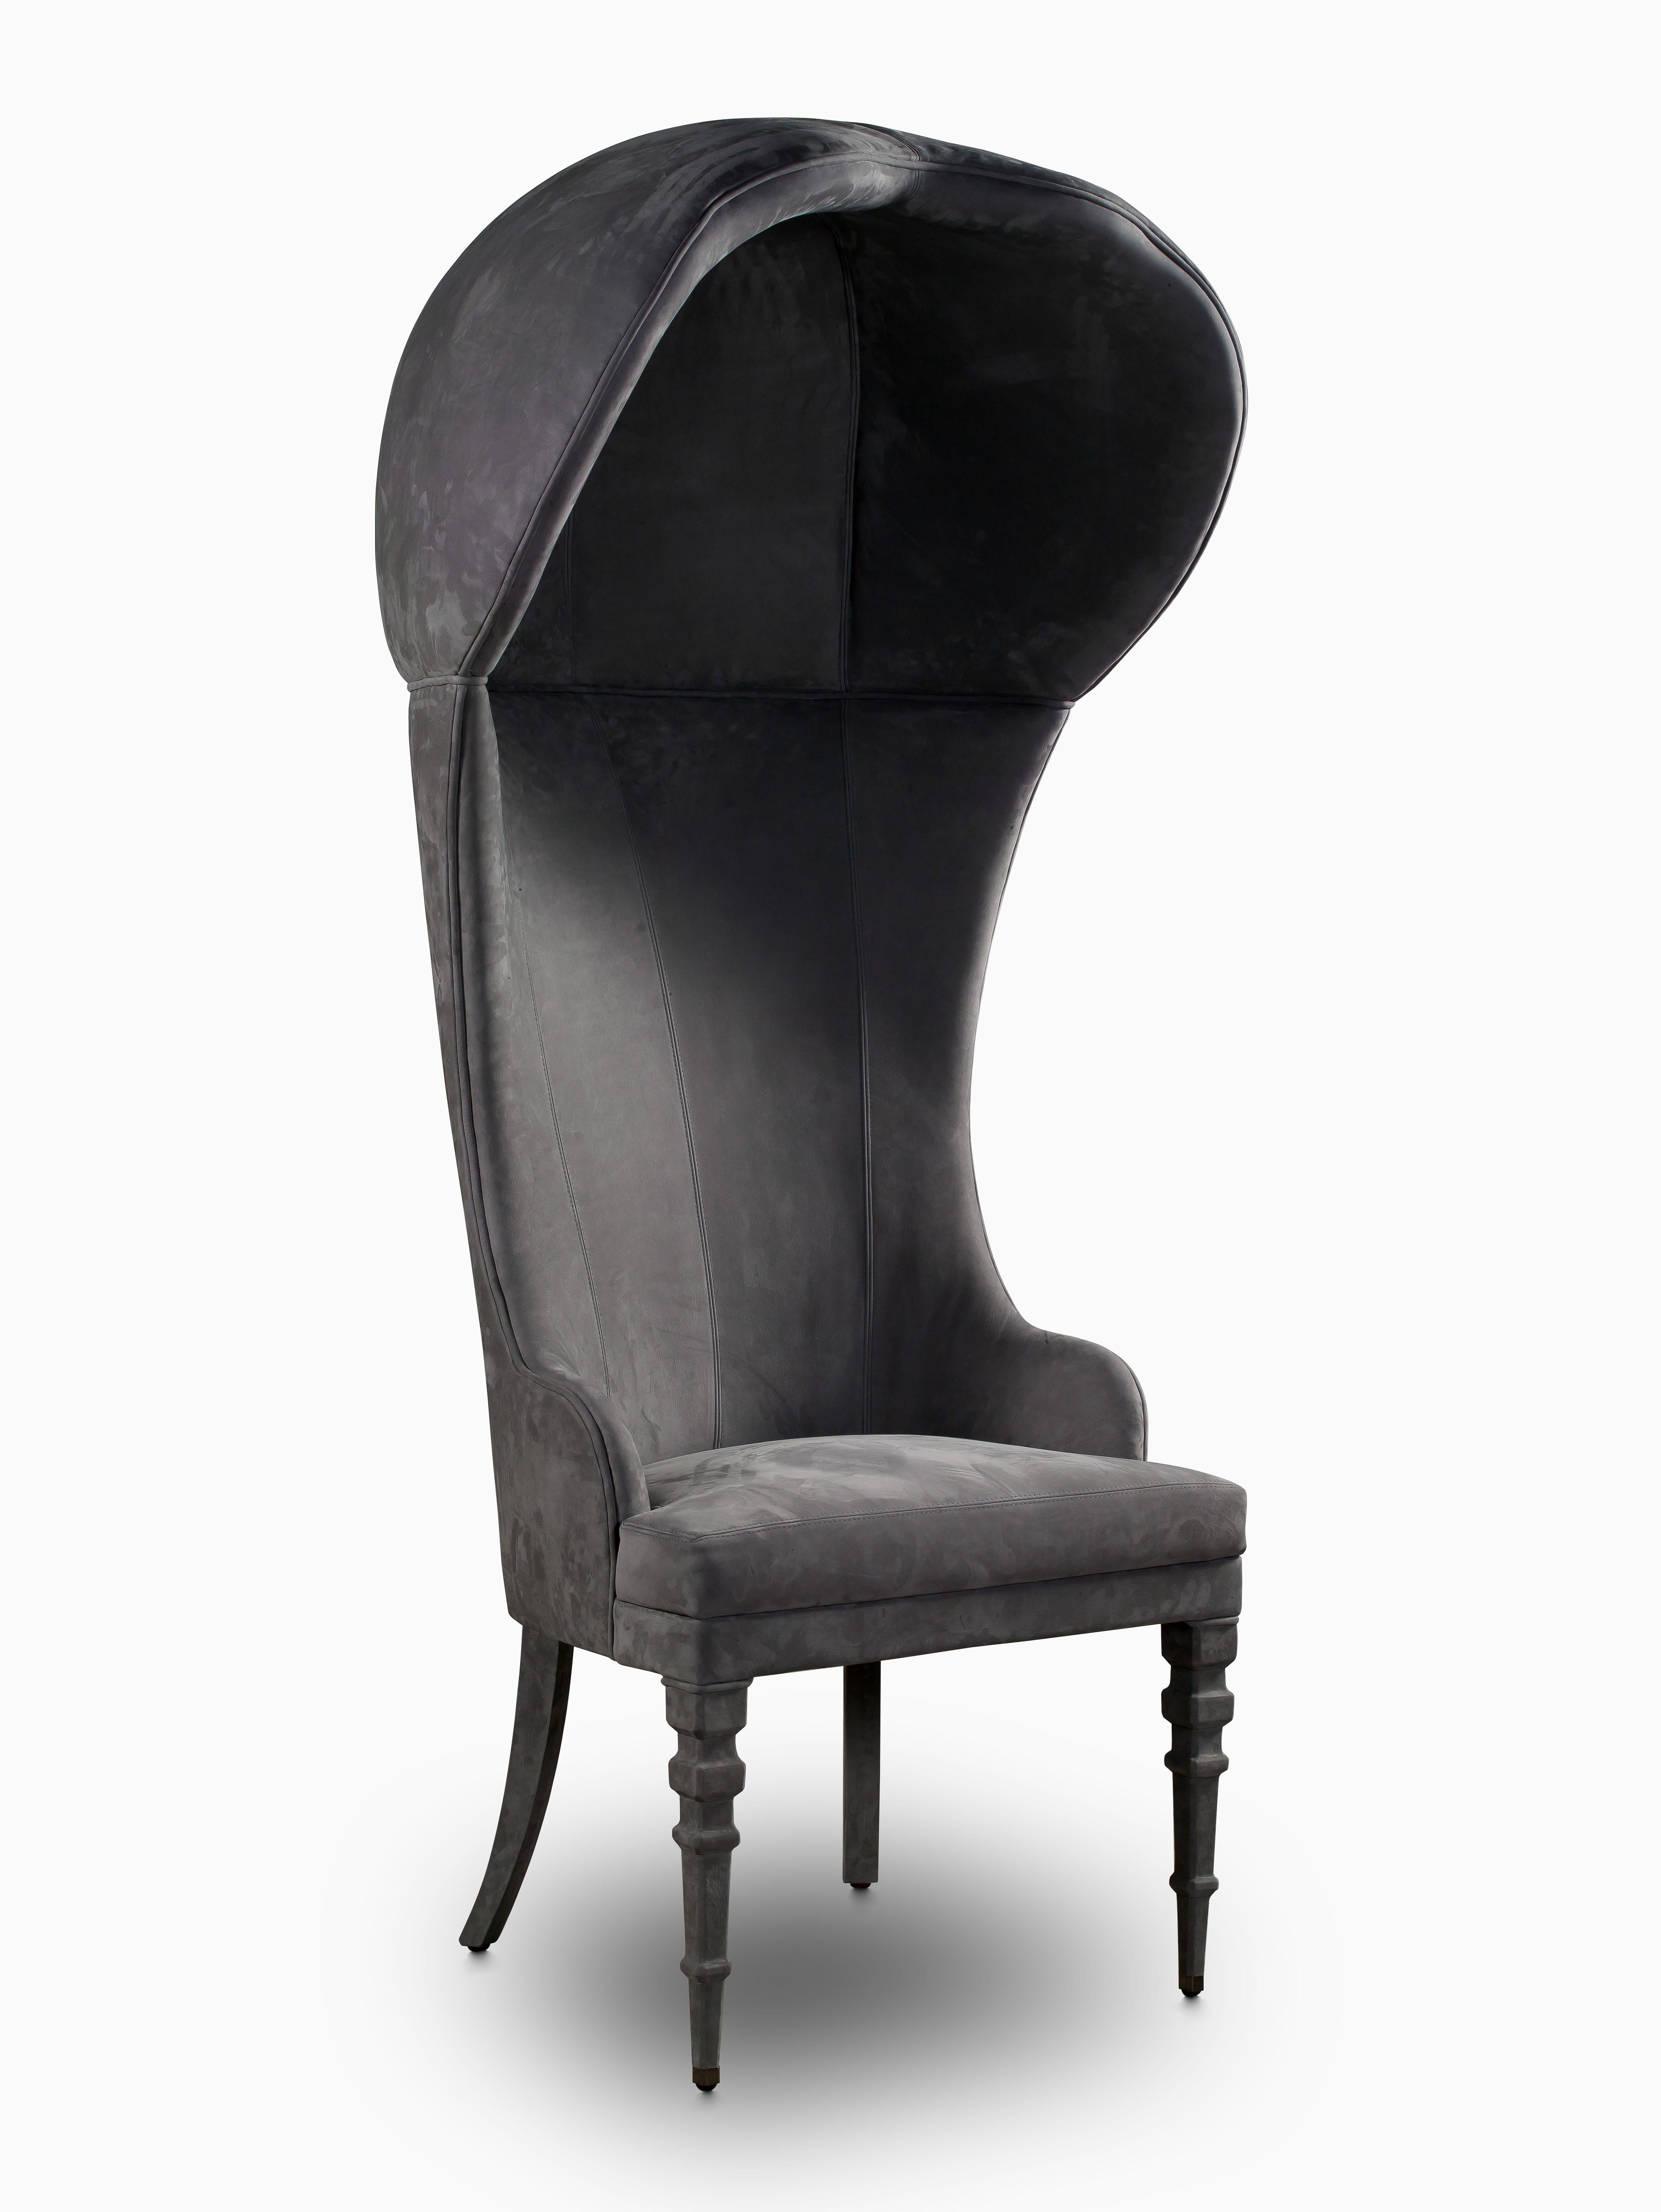 Sombrero, c'est une chaise inconditionnelle.
Siège imposant, au charme théâtral, Sombrero de Clan Milano présente des profils sinueux qui se projettent en dôme vers le haut. Les formes enveloppantes du dossier garantissent confort et